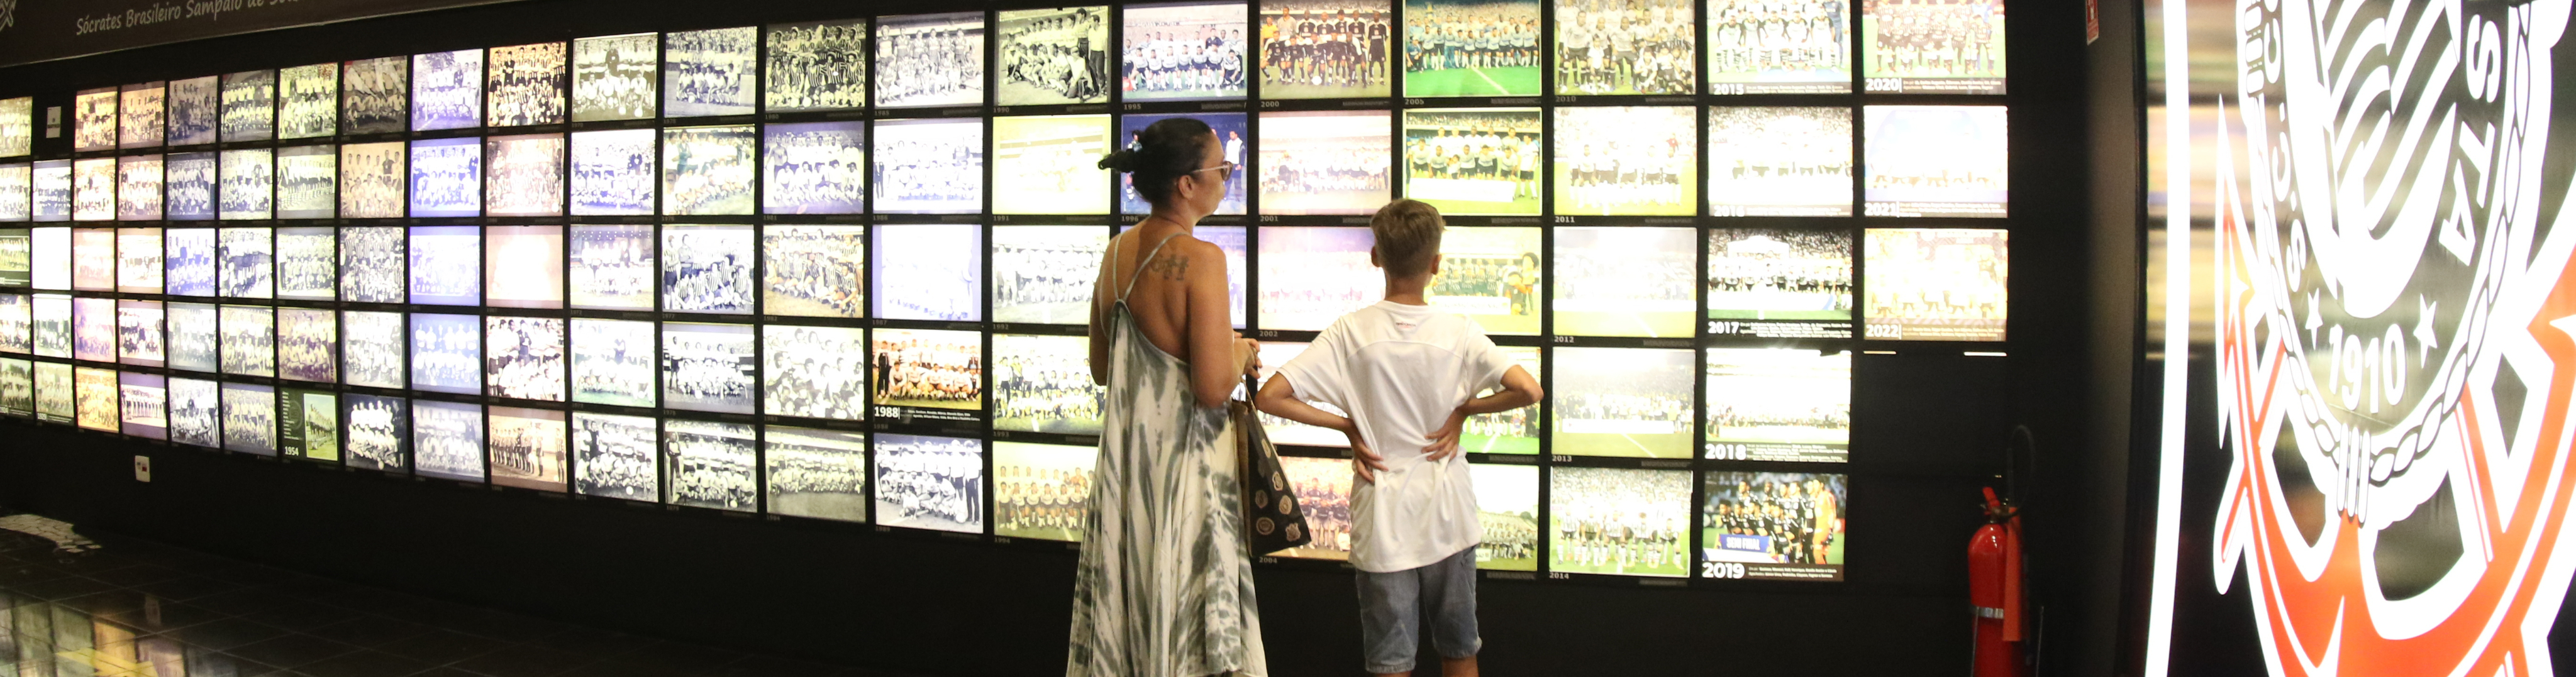 Memorial do Corinthians tem entrada gratuita na semana nacional de museus